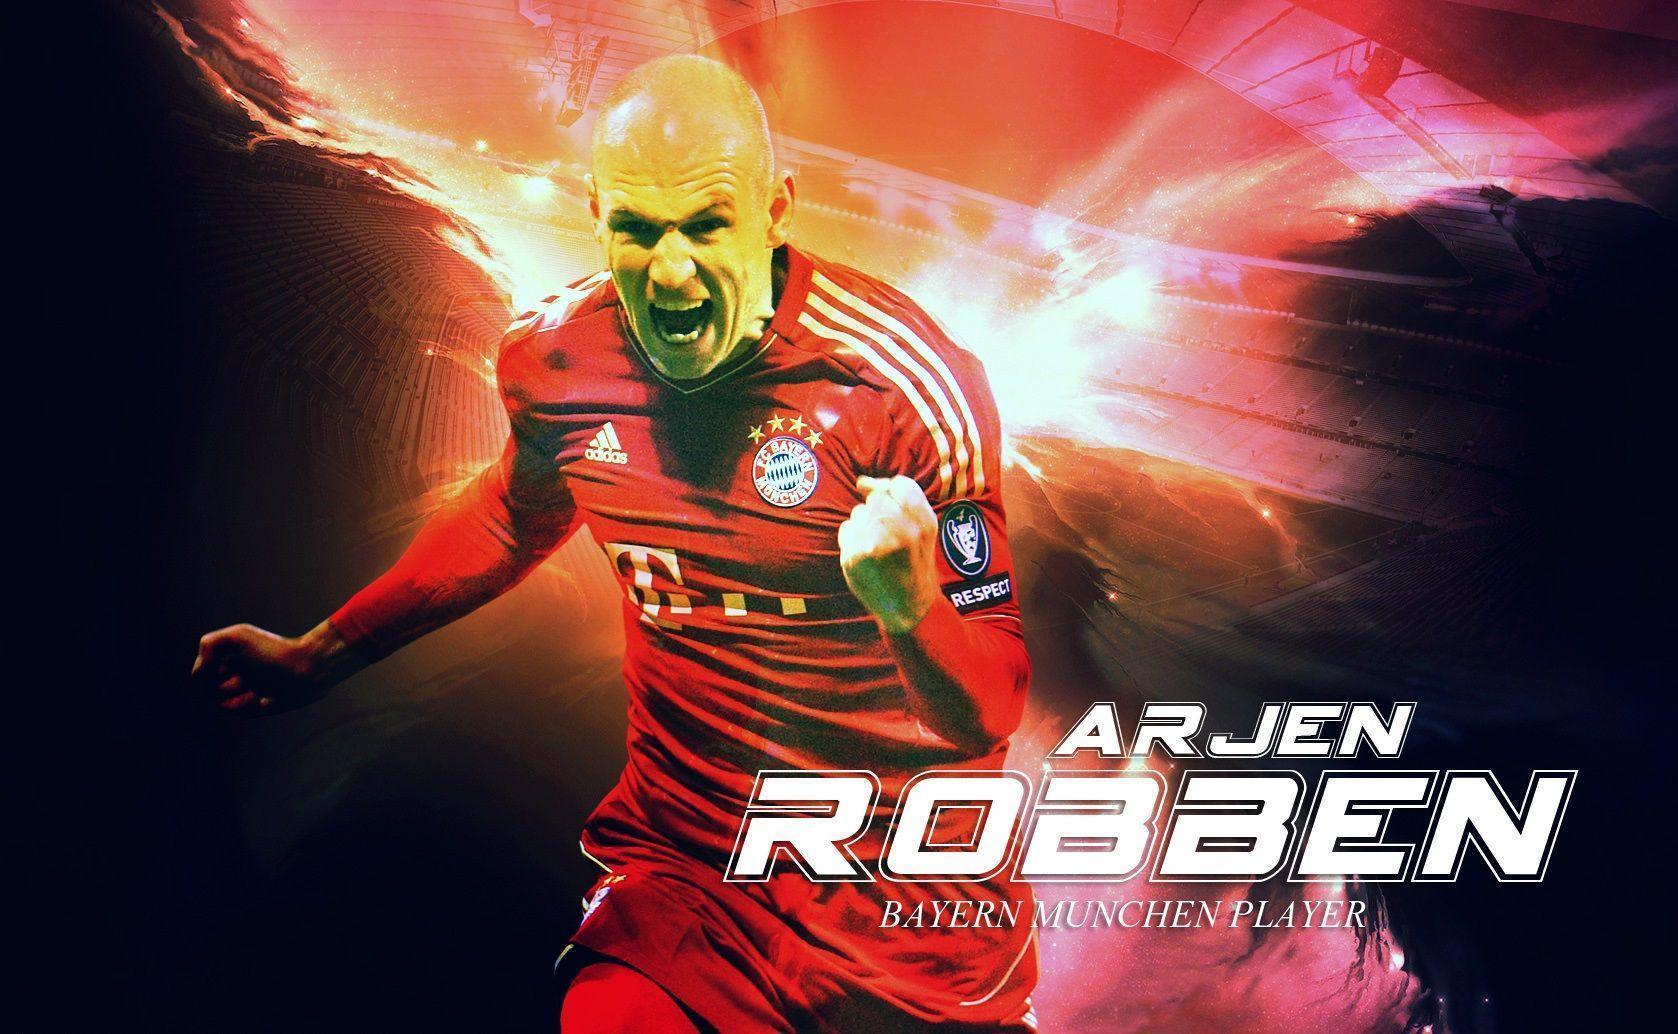 Arjen Robben Wallpaper. Arjen Robben 2015. Arjen Robben Bayern